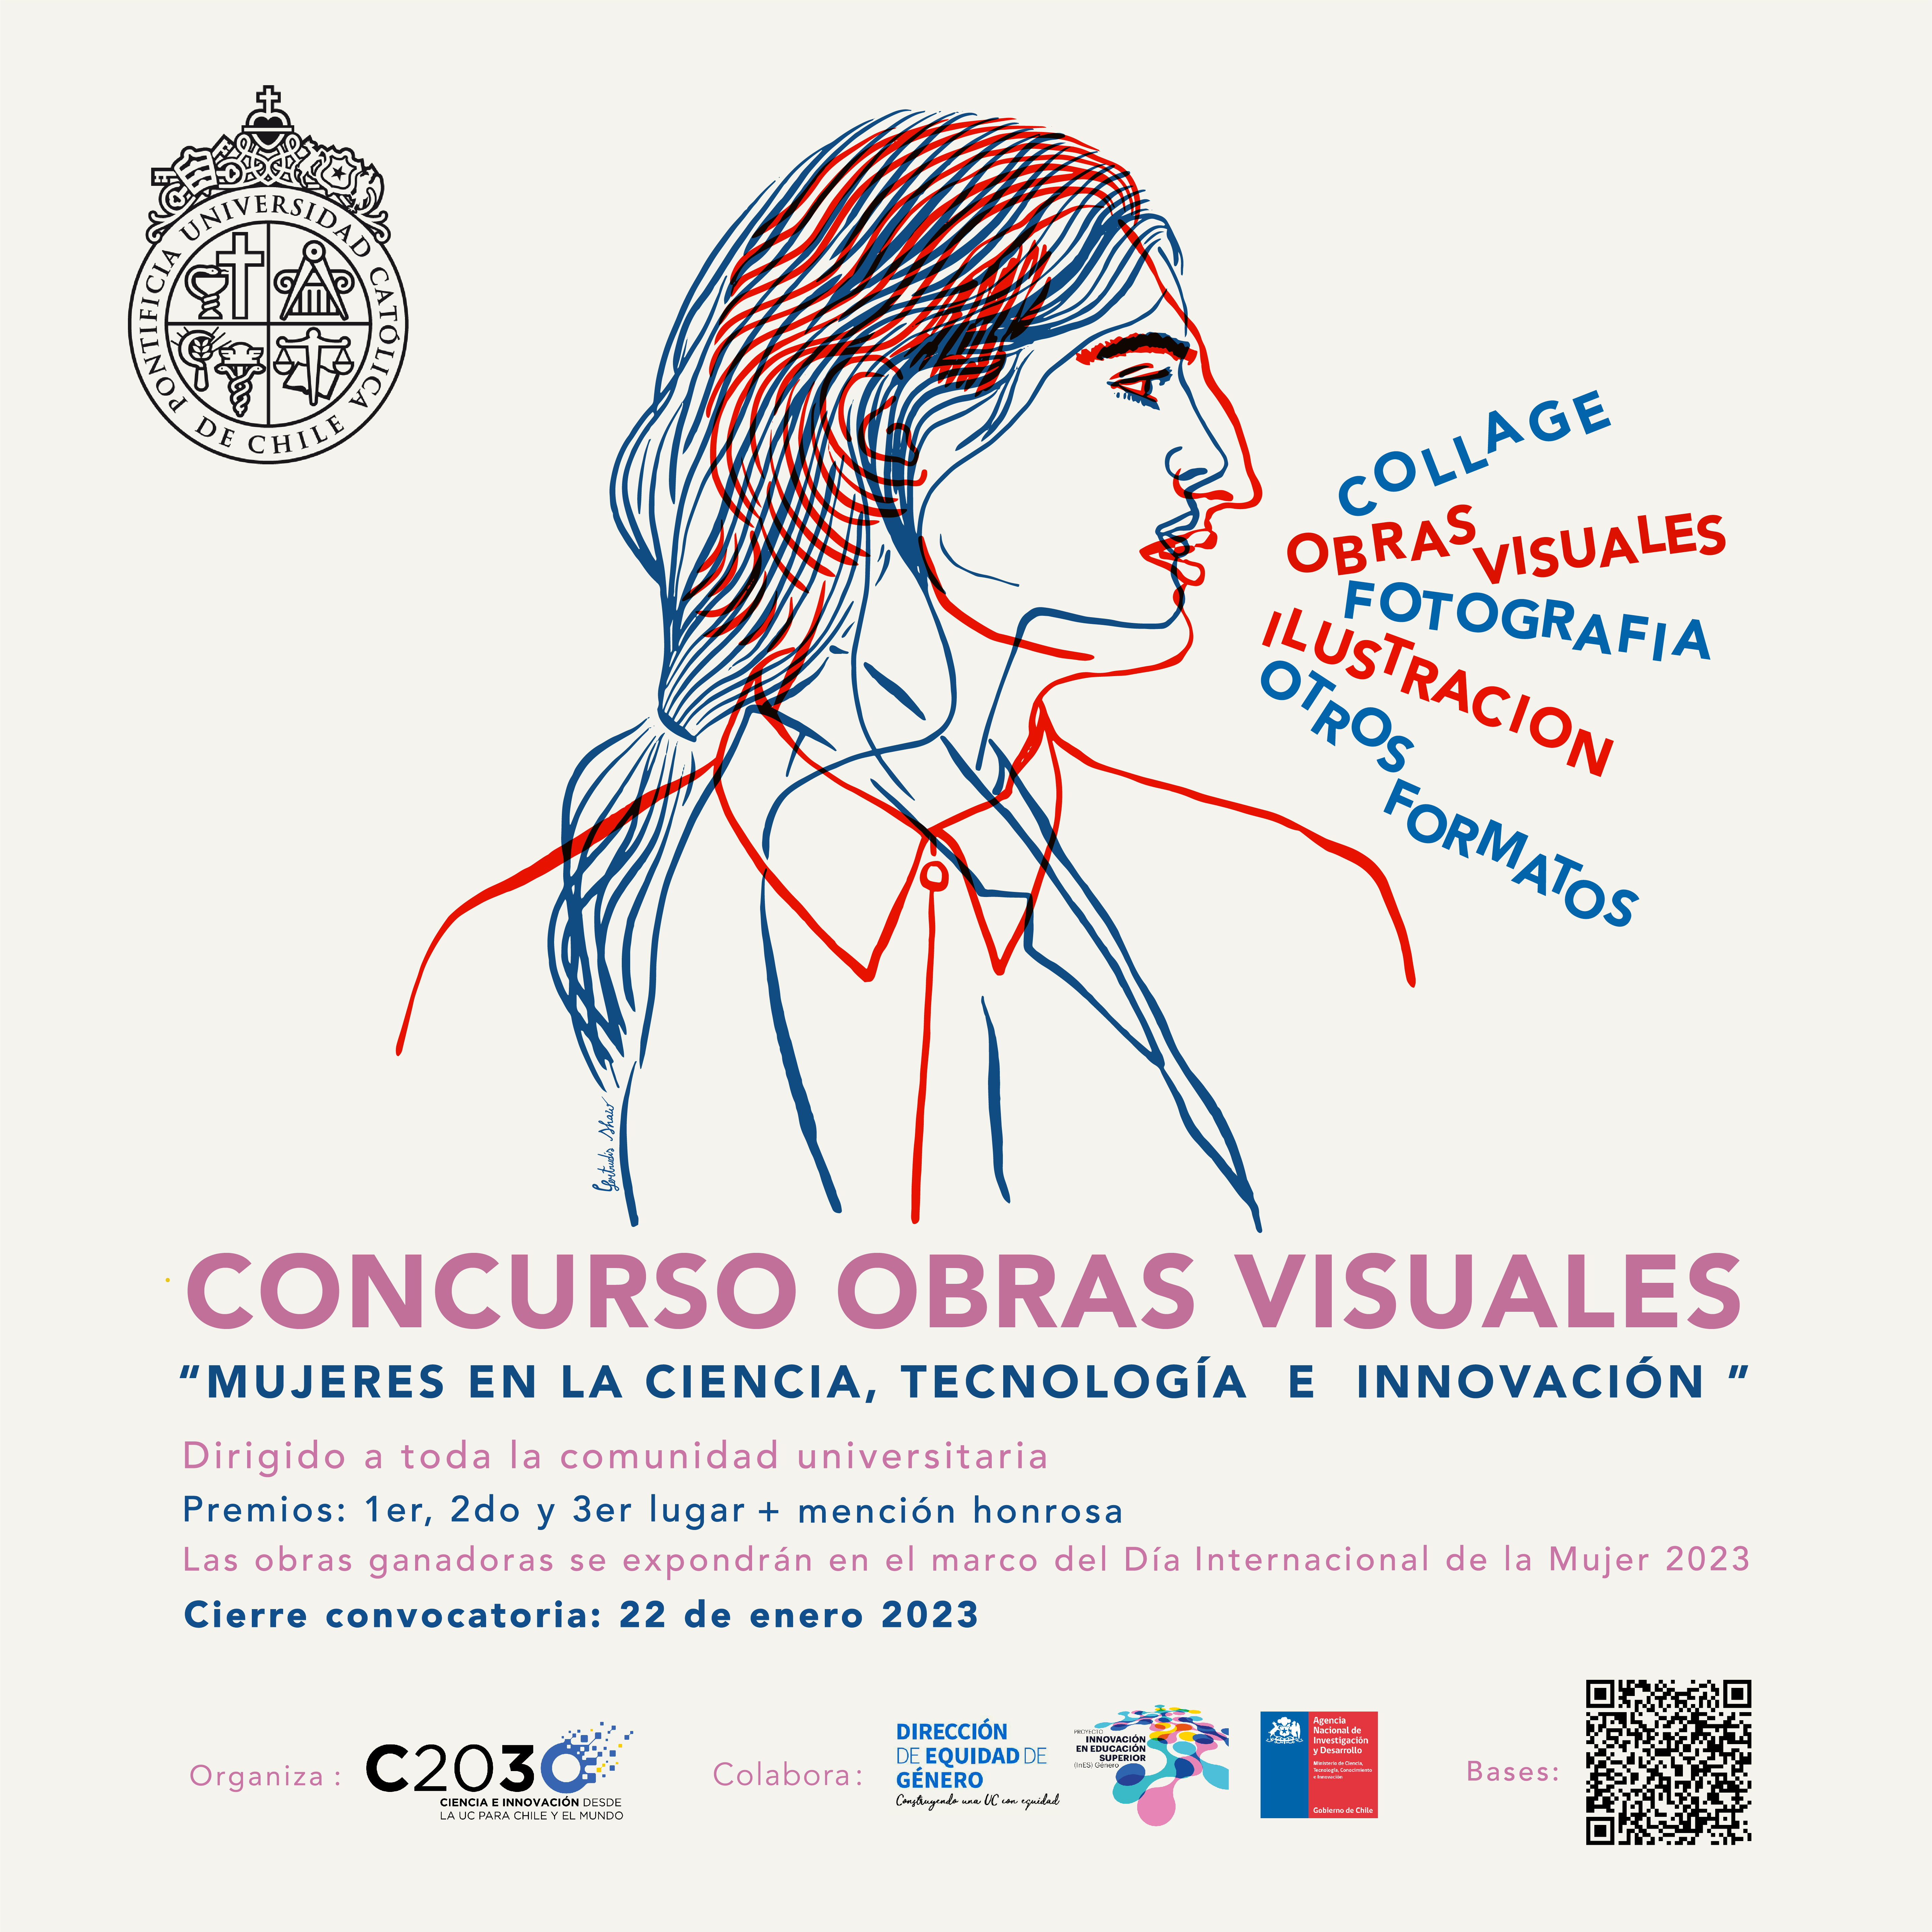 Concurso de obras visuales: Mujeres en ciencia, tecnología e innovación